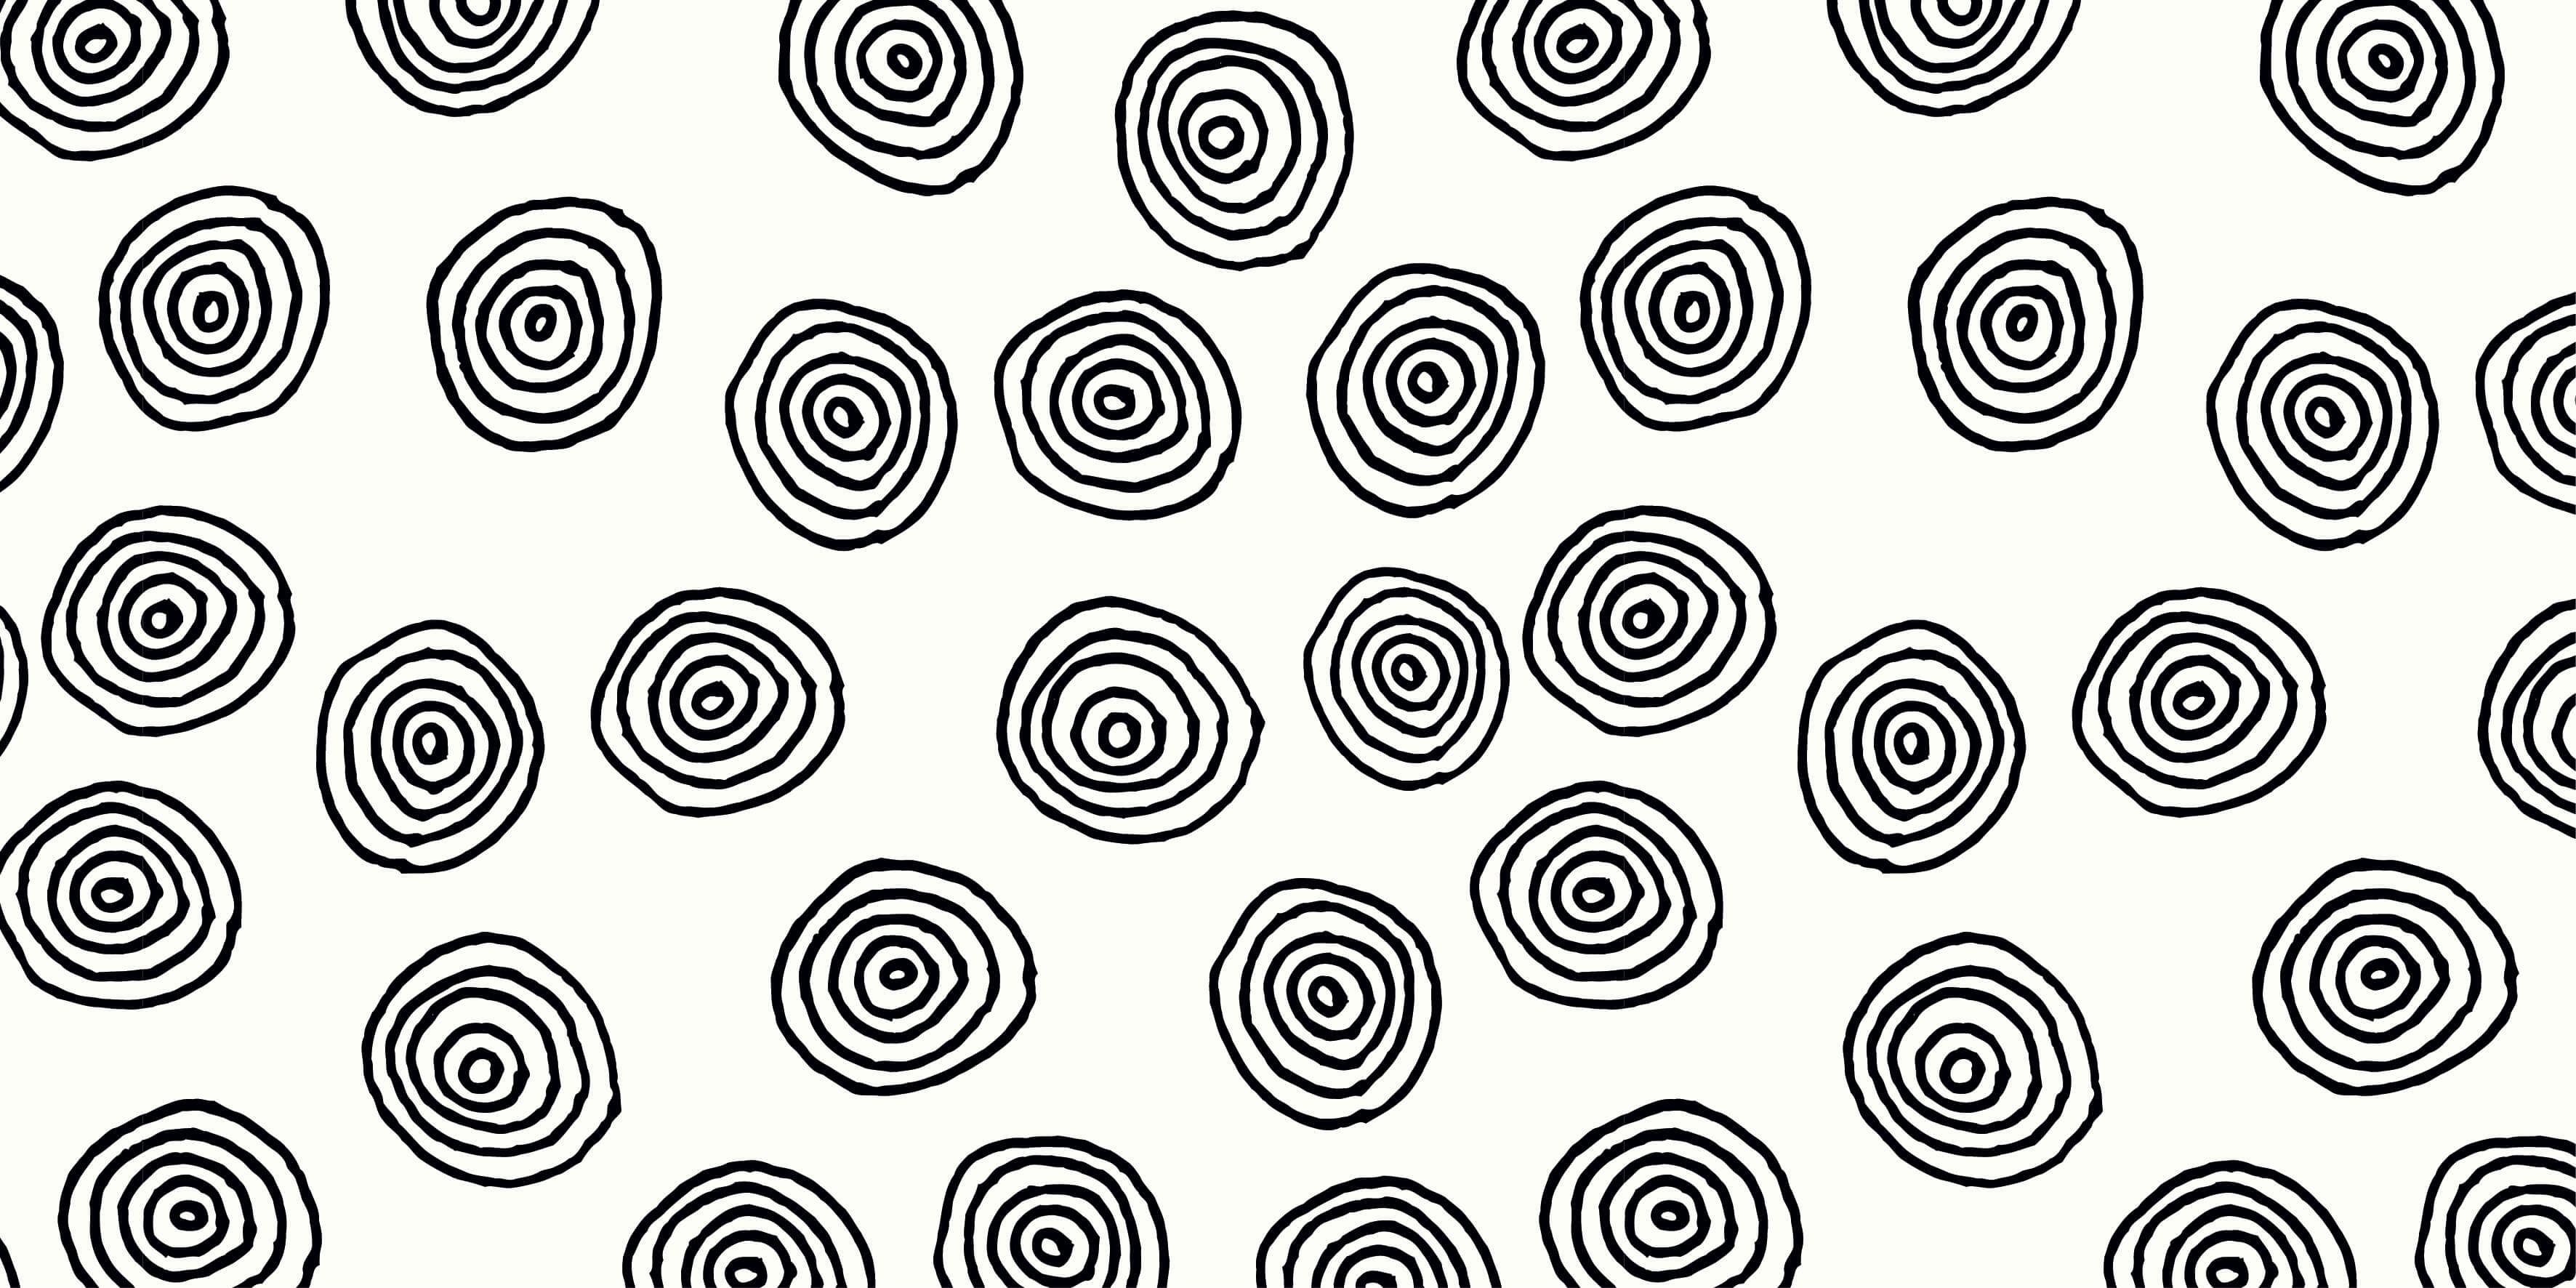 Abstrait - Cercles abstraits en noir et blanc - Chambre d'hobby